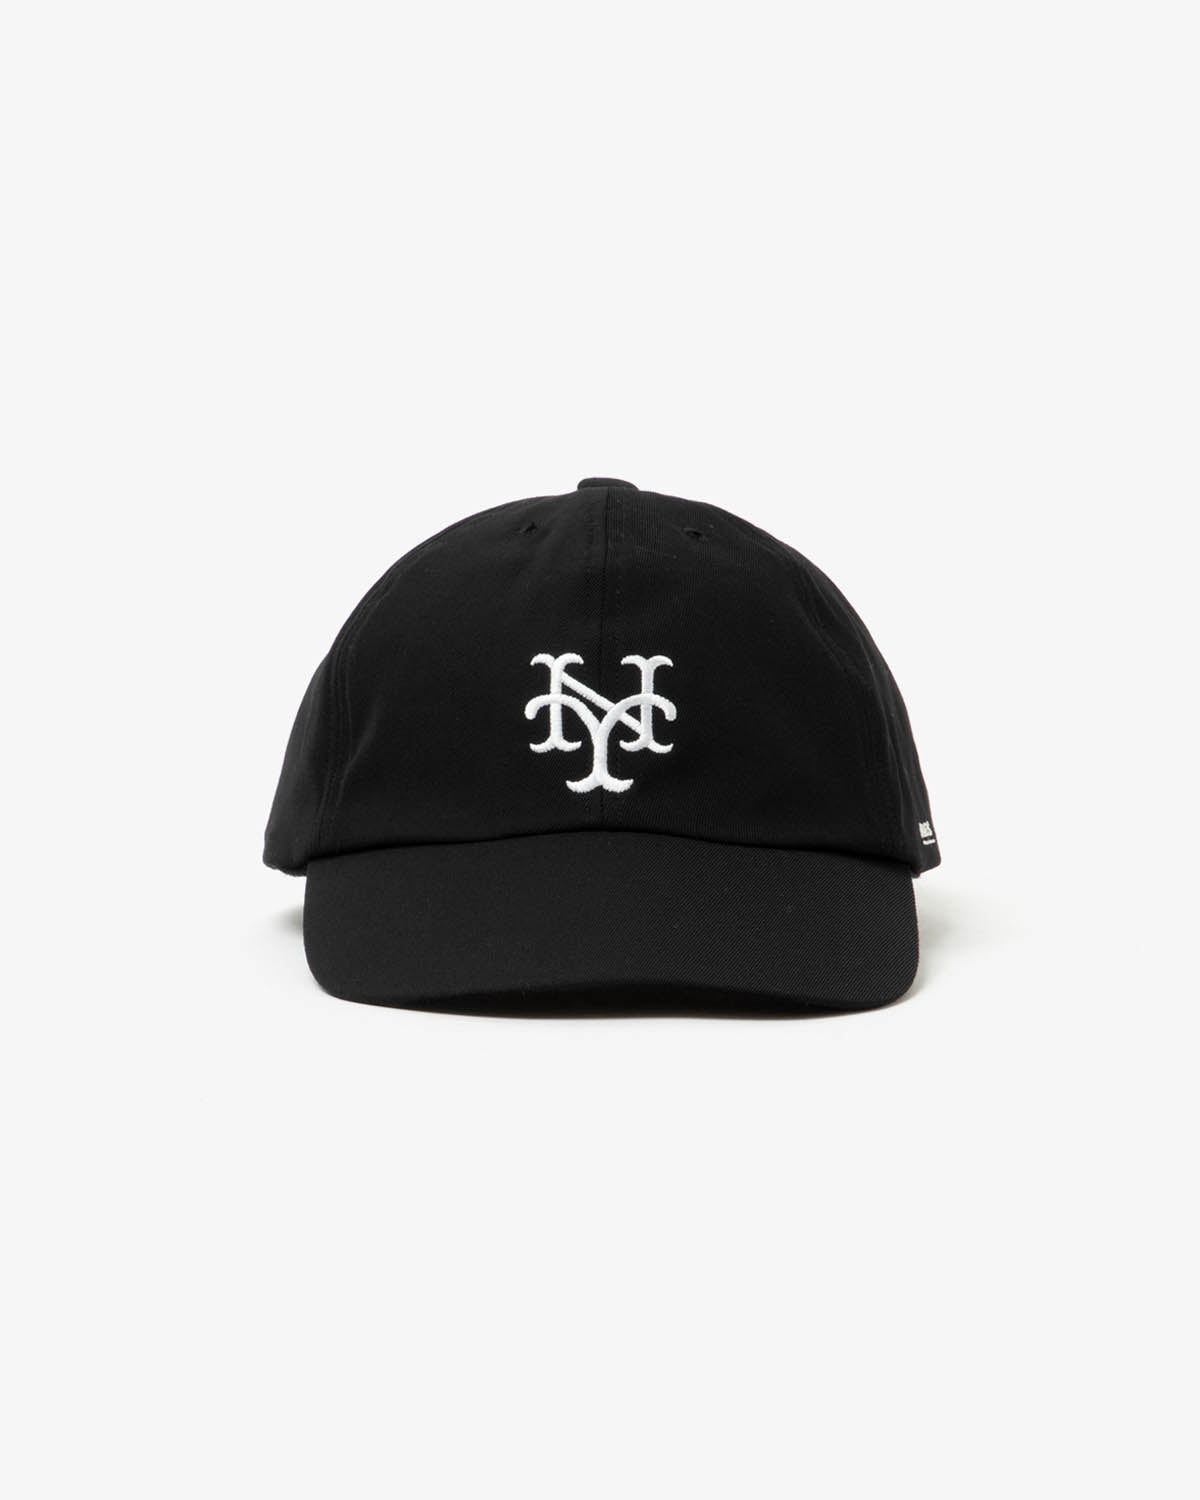 NY CUBANS CAP (WOMEN'S)